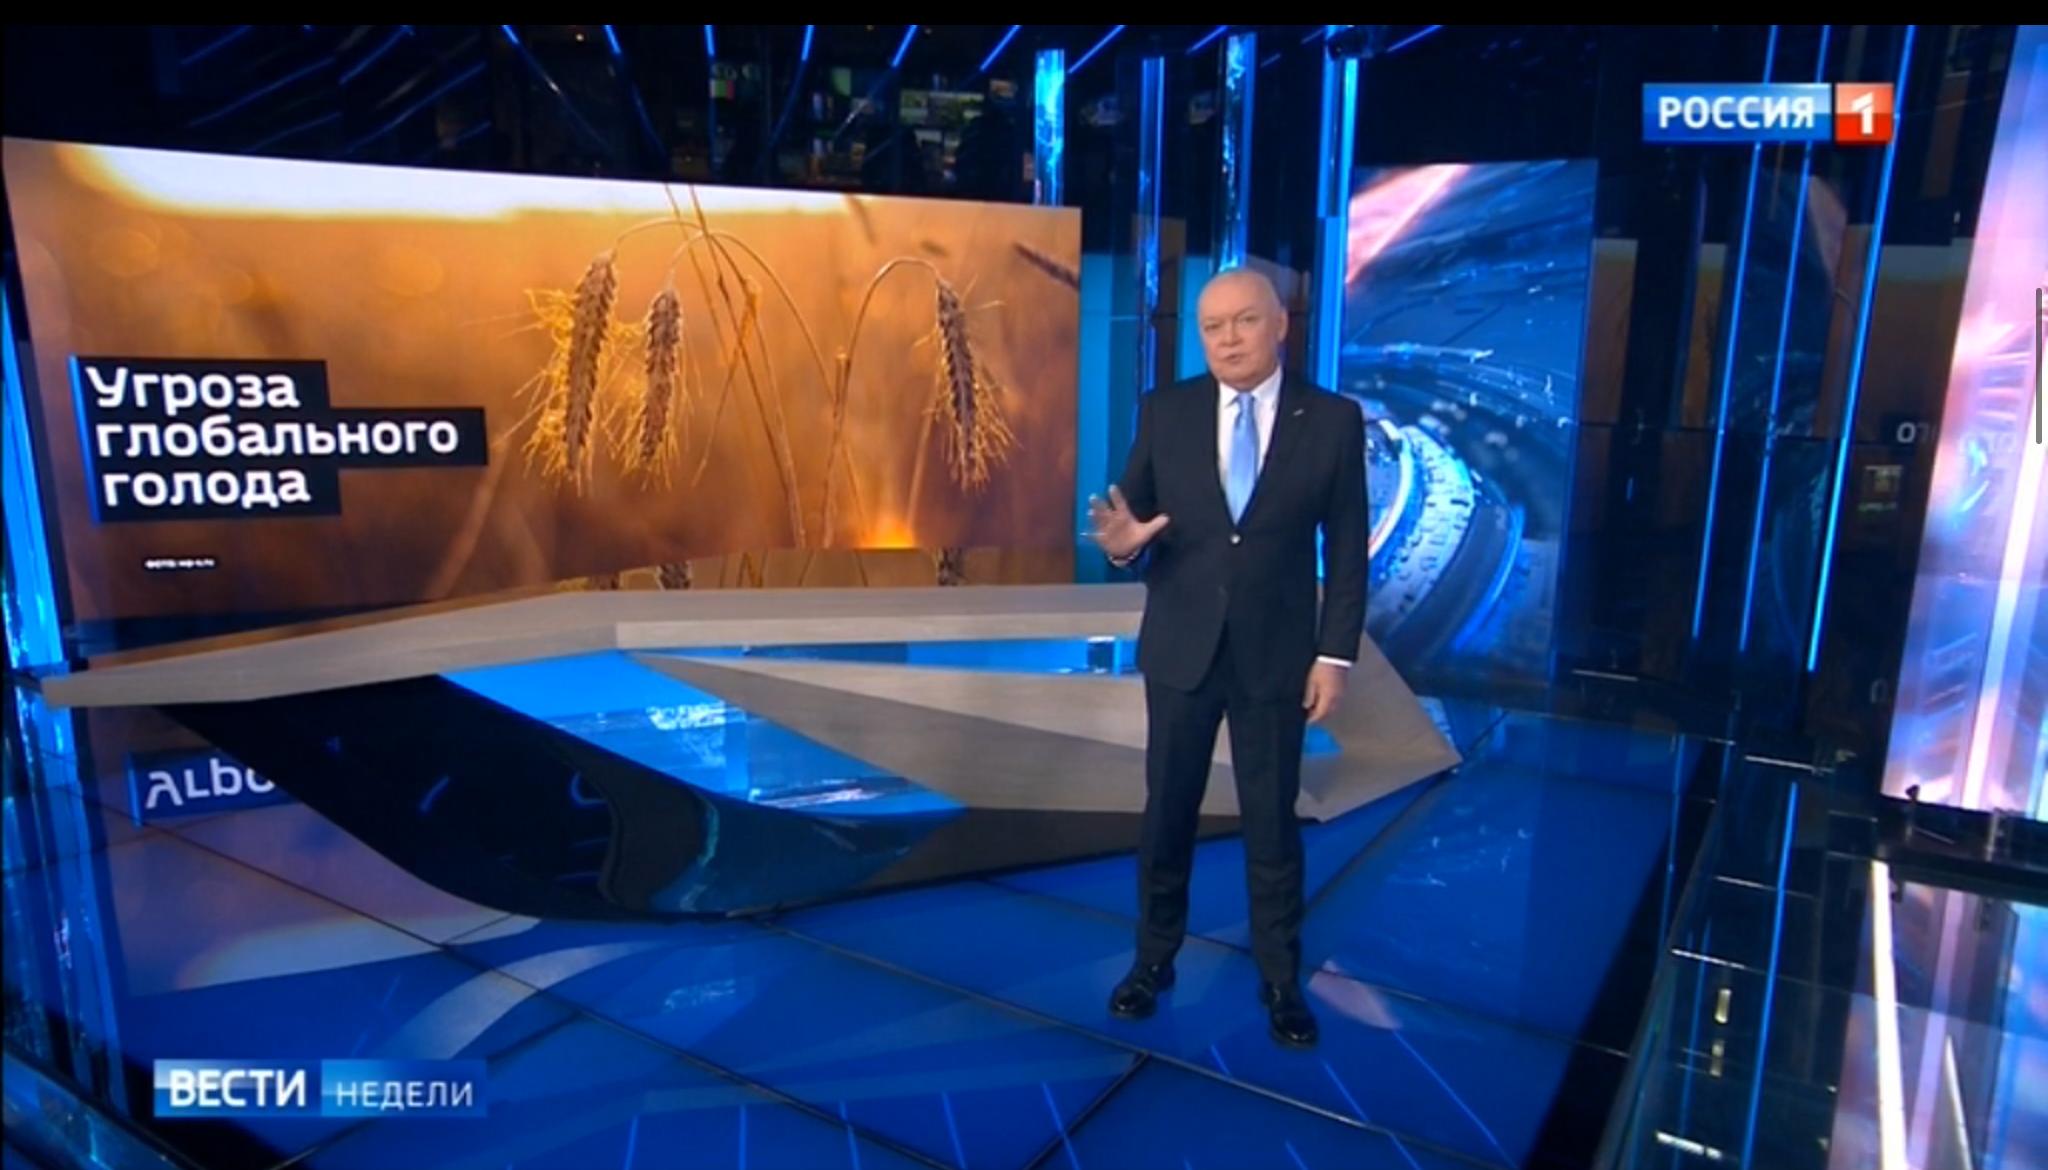 Studio telewizyjne, prezenter, w tle zdjęcie pola zboża i rosyjski napis "Zagrożenie klęską głodu na świecie"